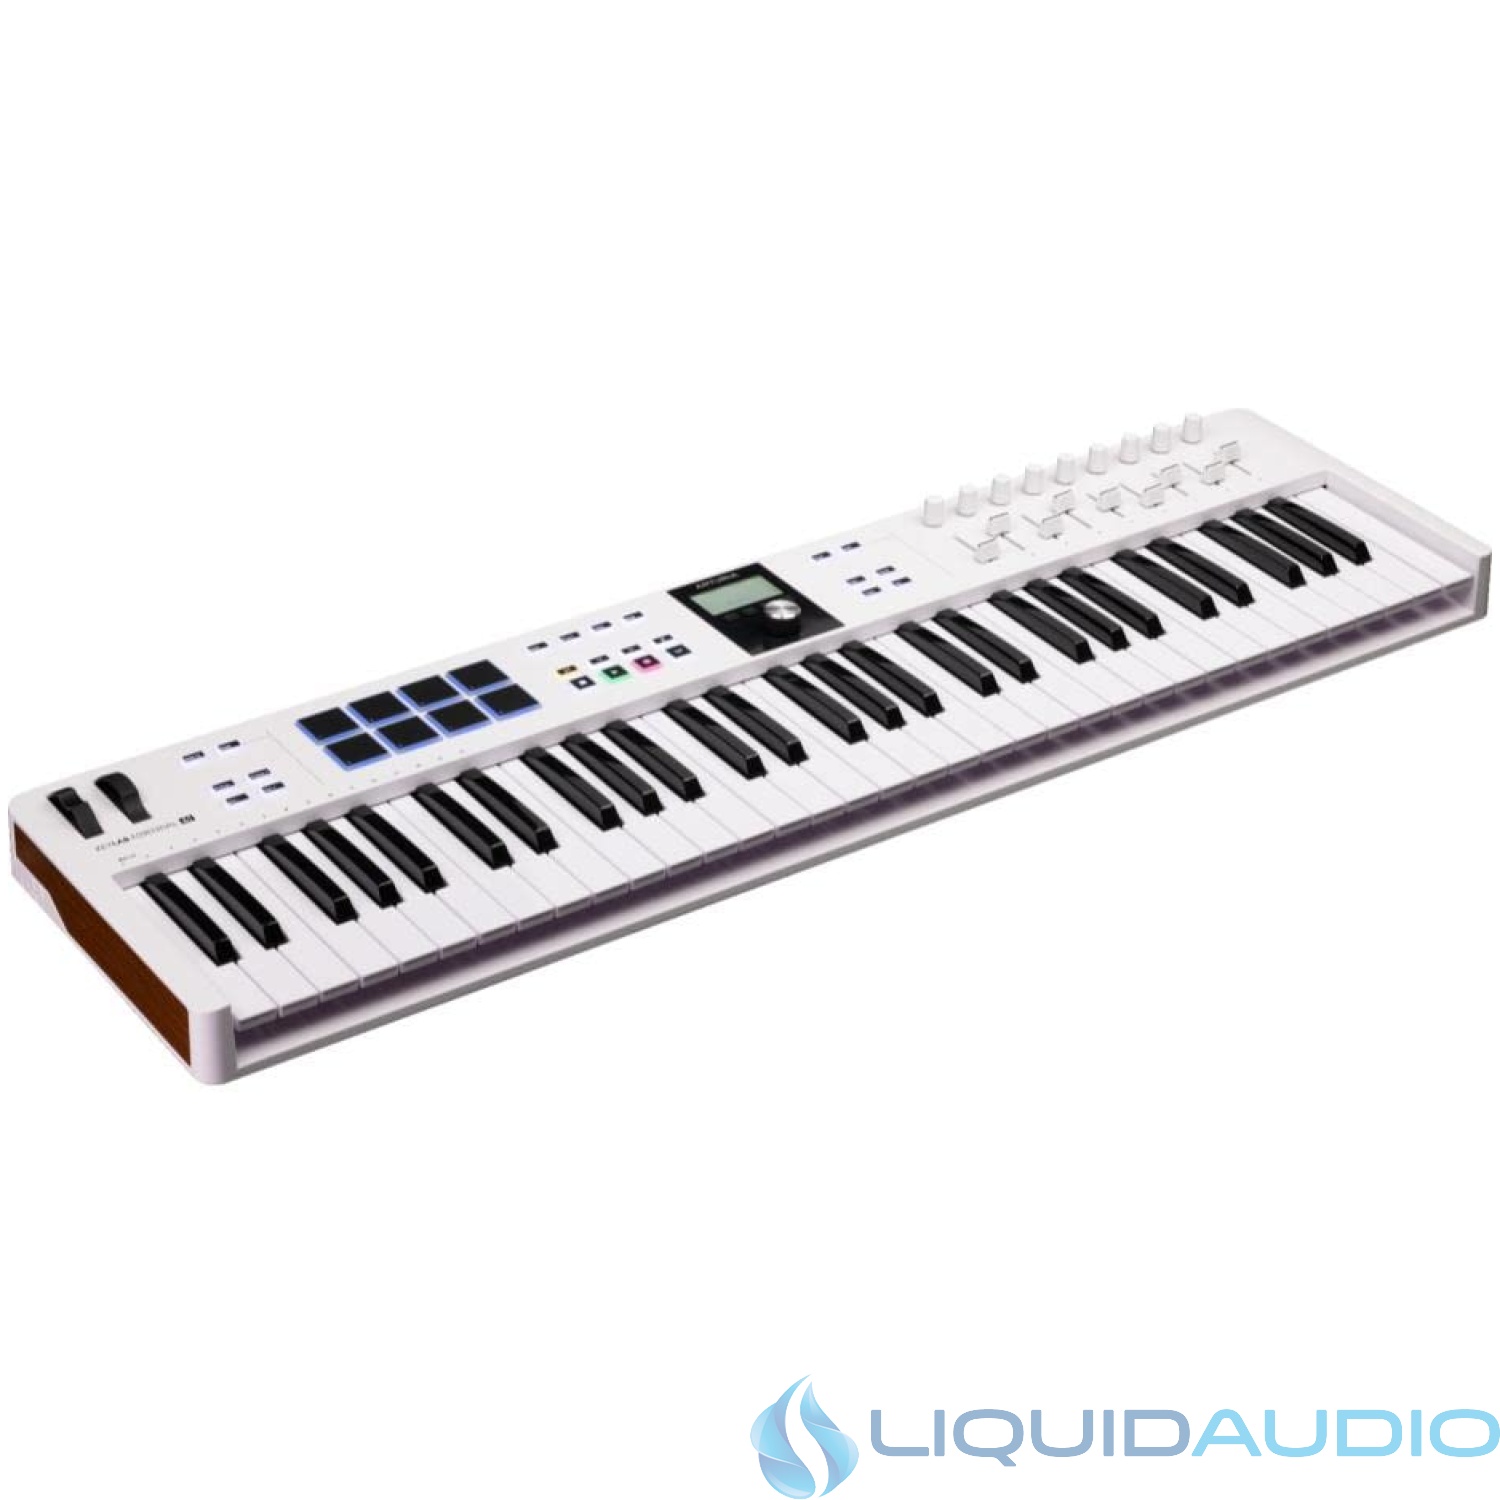 Arturia KeyLab Essential mk3  61 Key USB MIDI Keyboard Controller with Analog Lab V Software Included